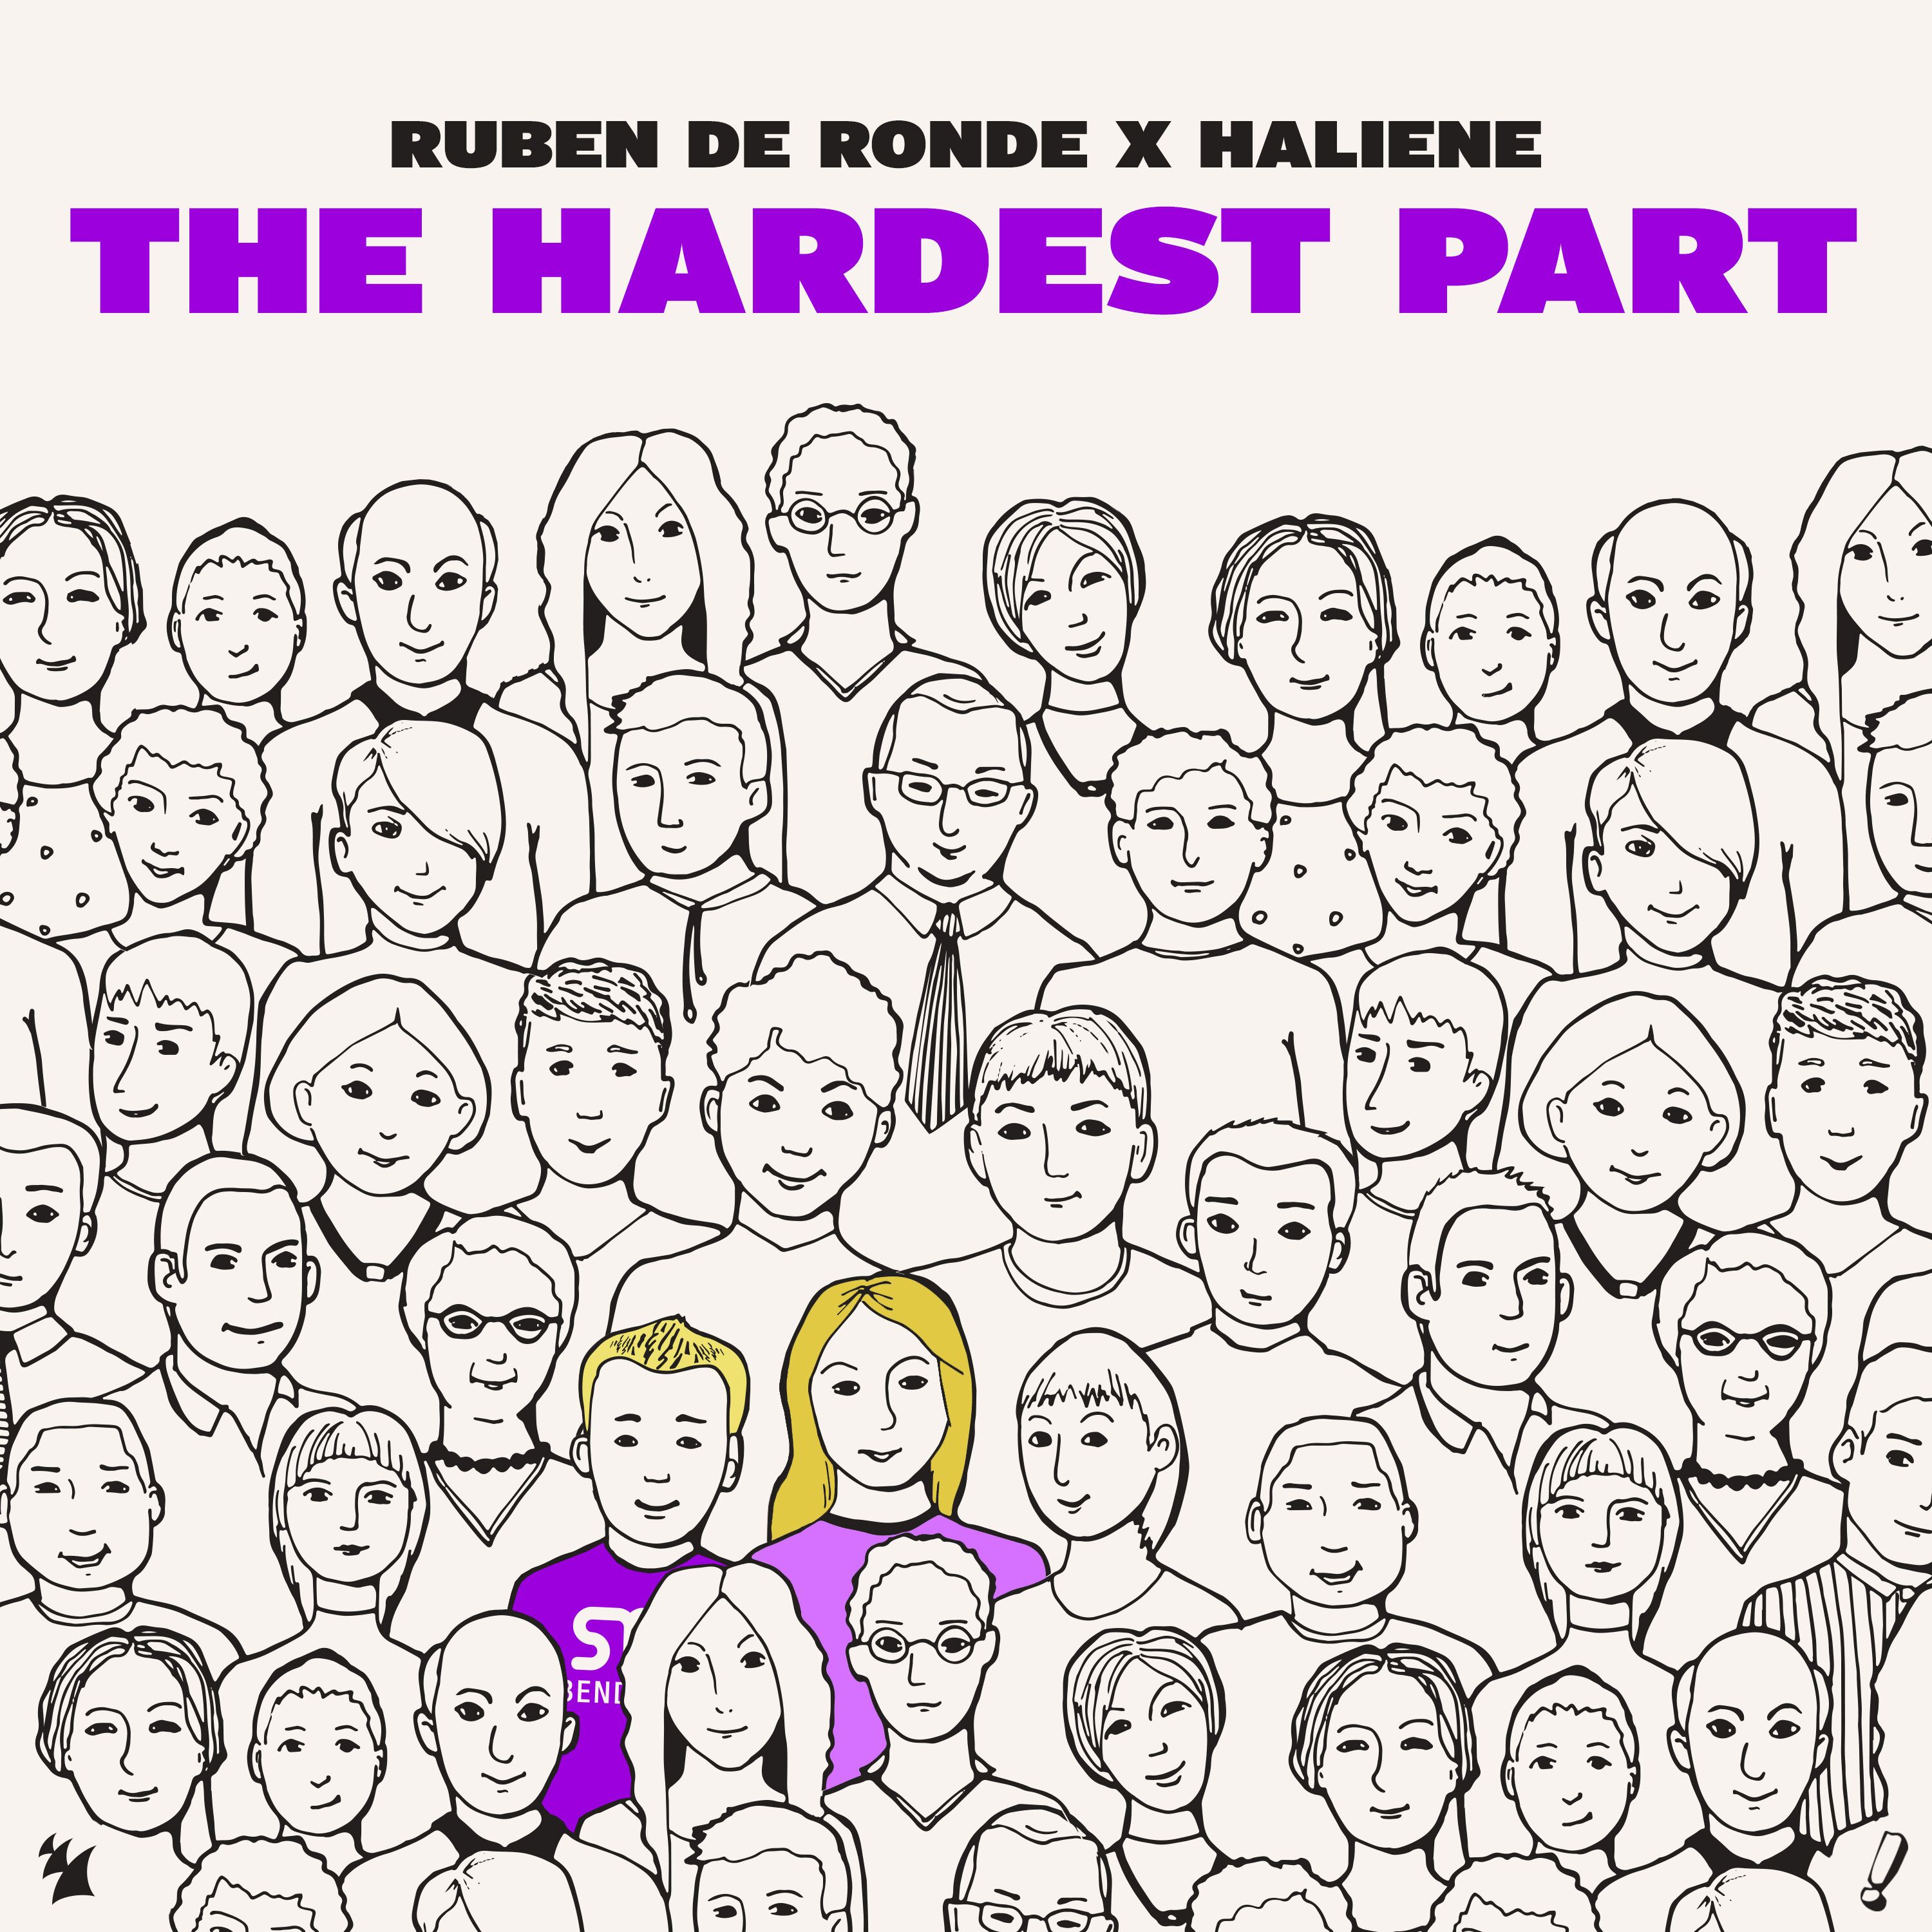 Ruben de Ronde x HALIENE presents The Hardest Part on Statement! / Armada Music